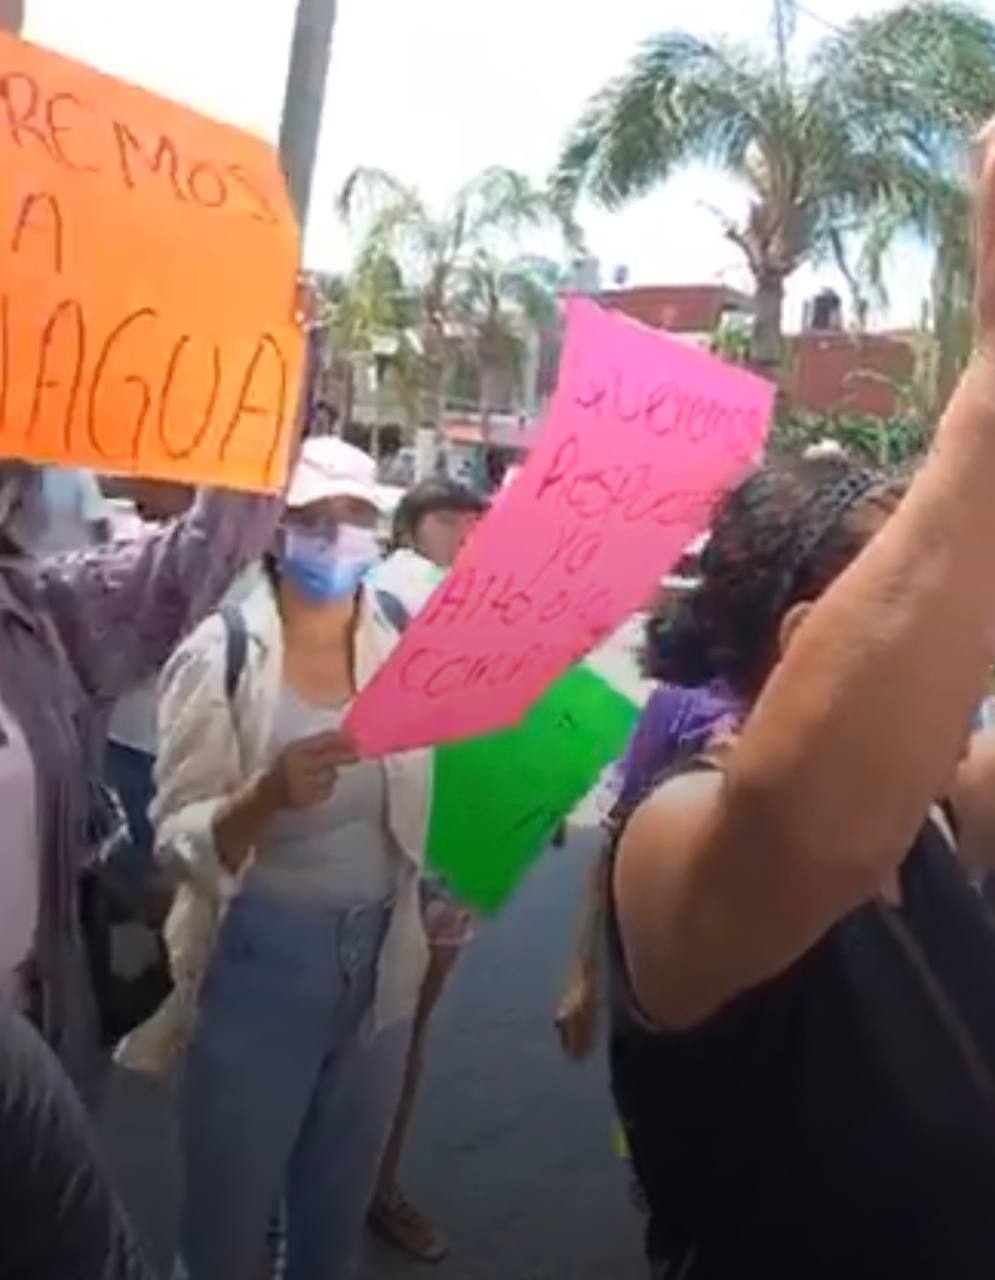 Toman manifestantes el ayuntamiento de Tamiahua, denuncian saqueo del agua